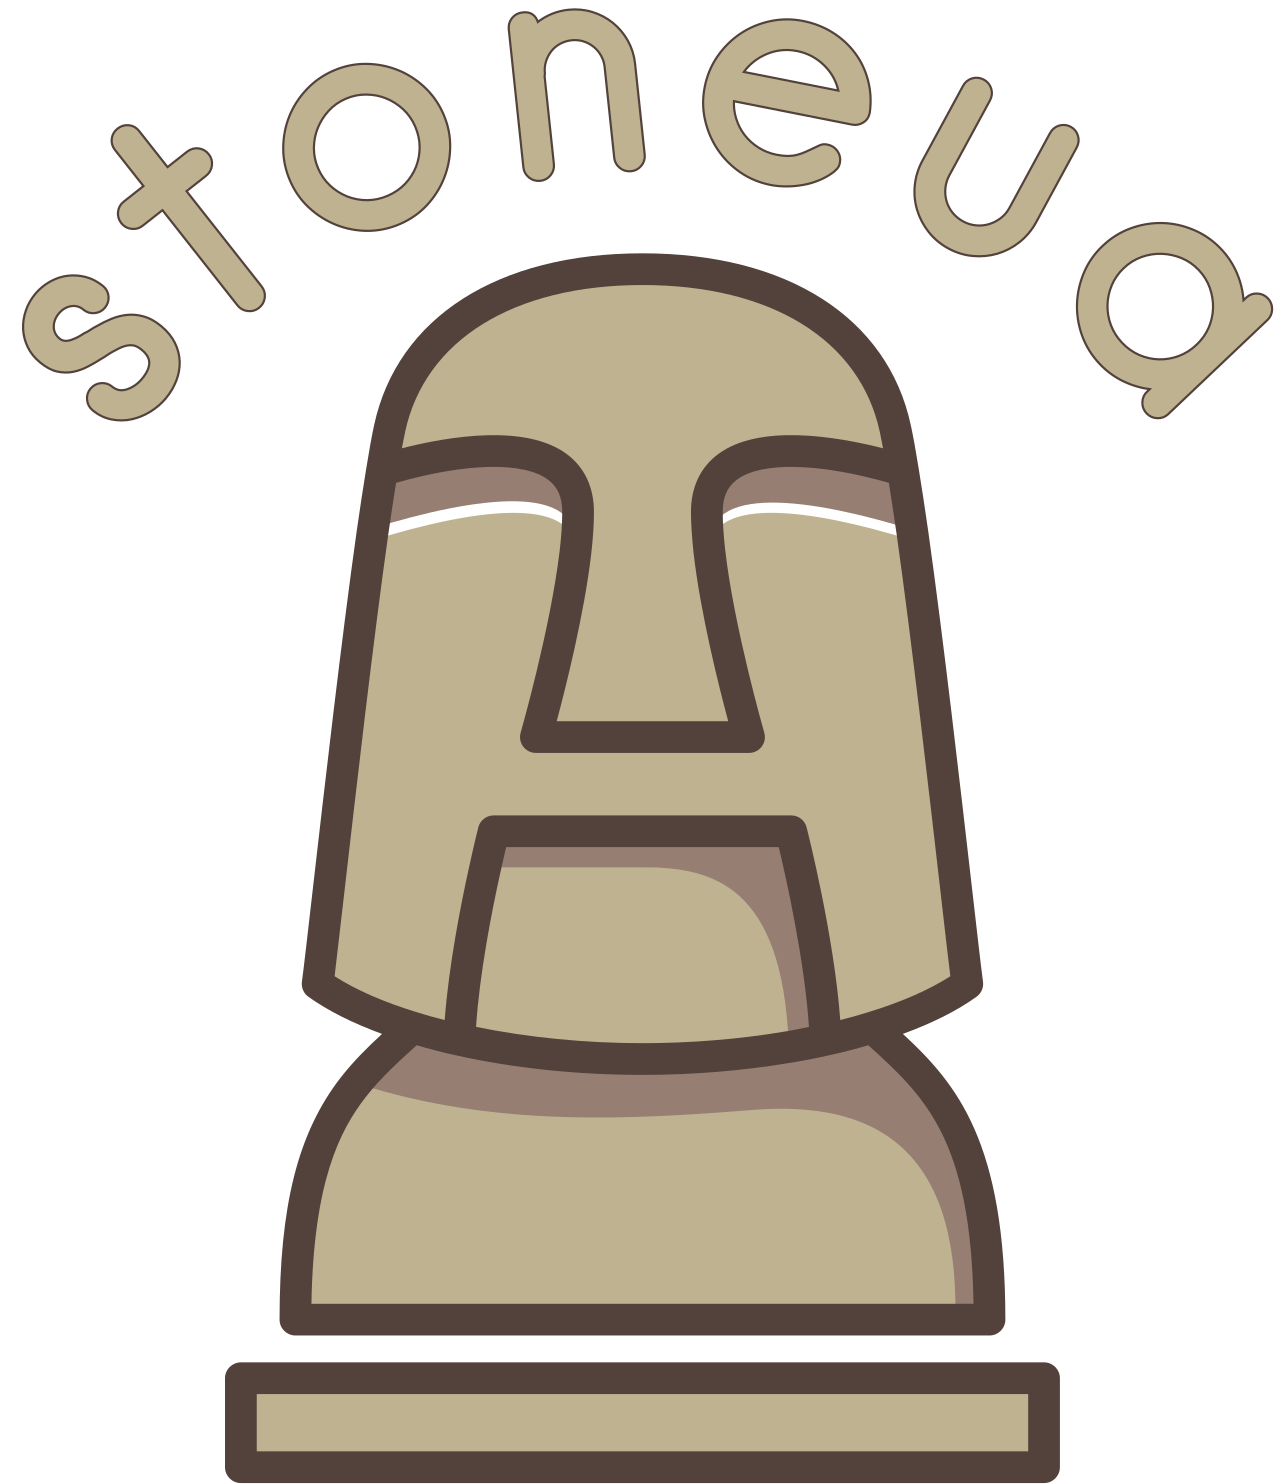 stoneua's web page